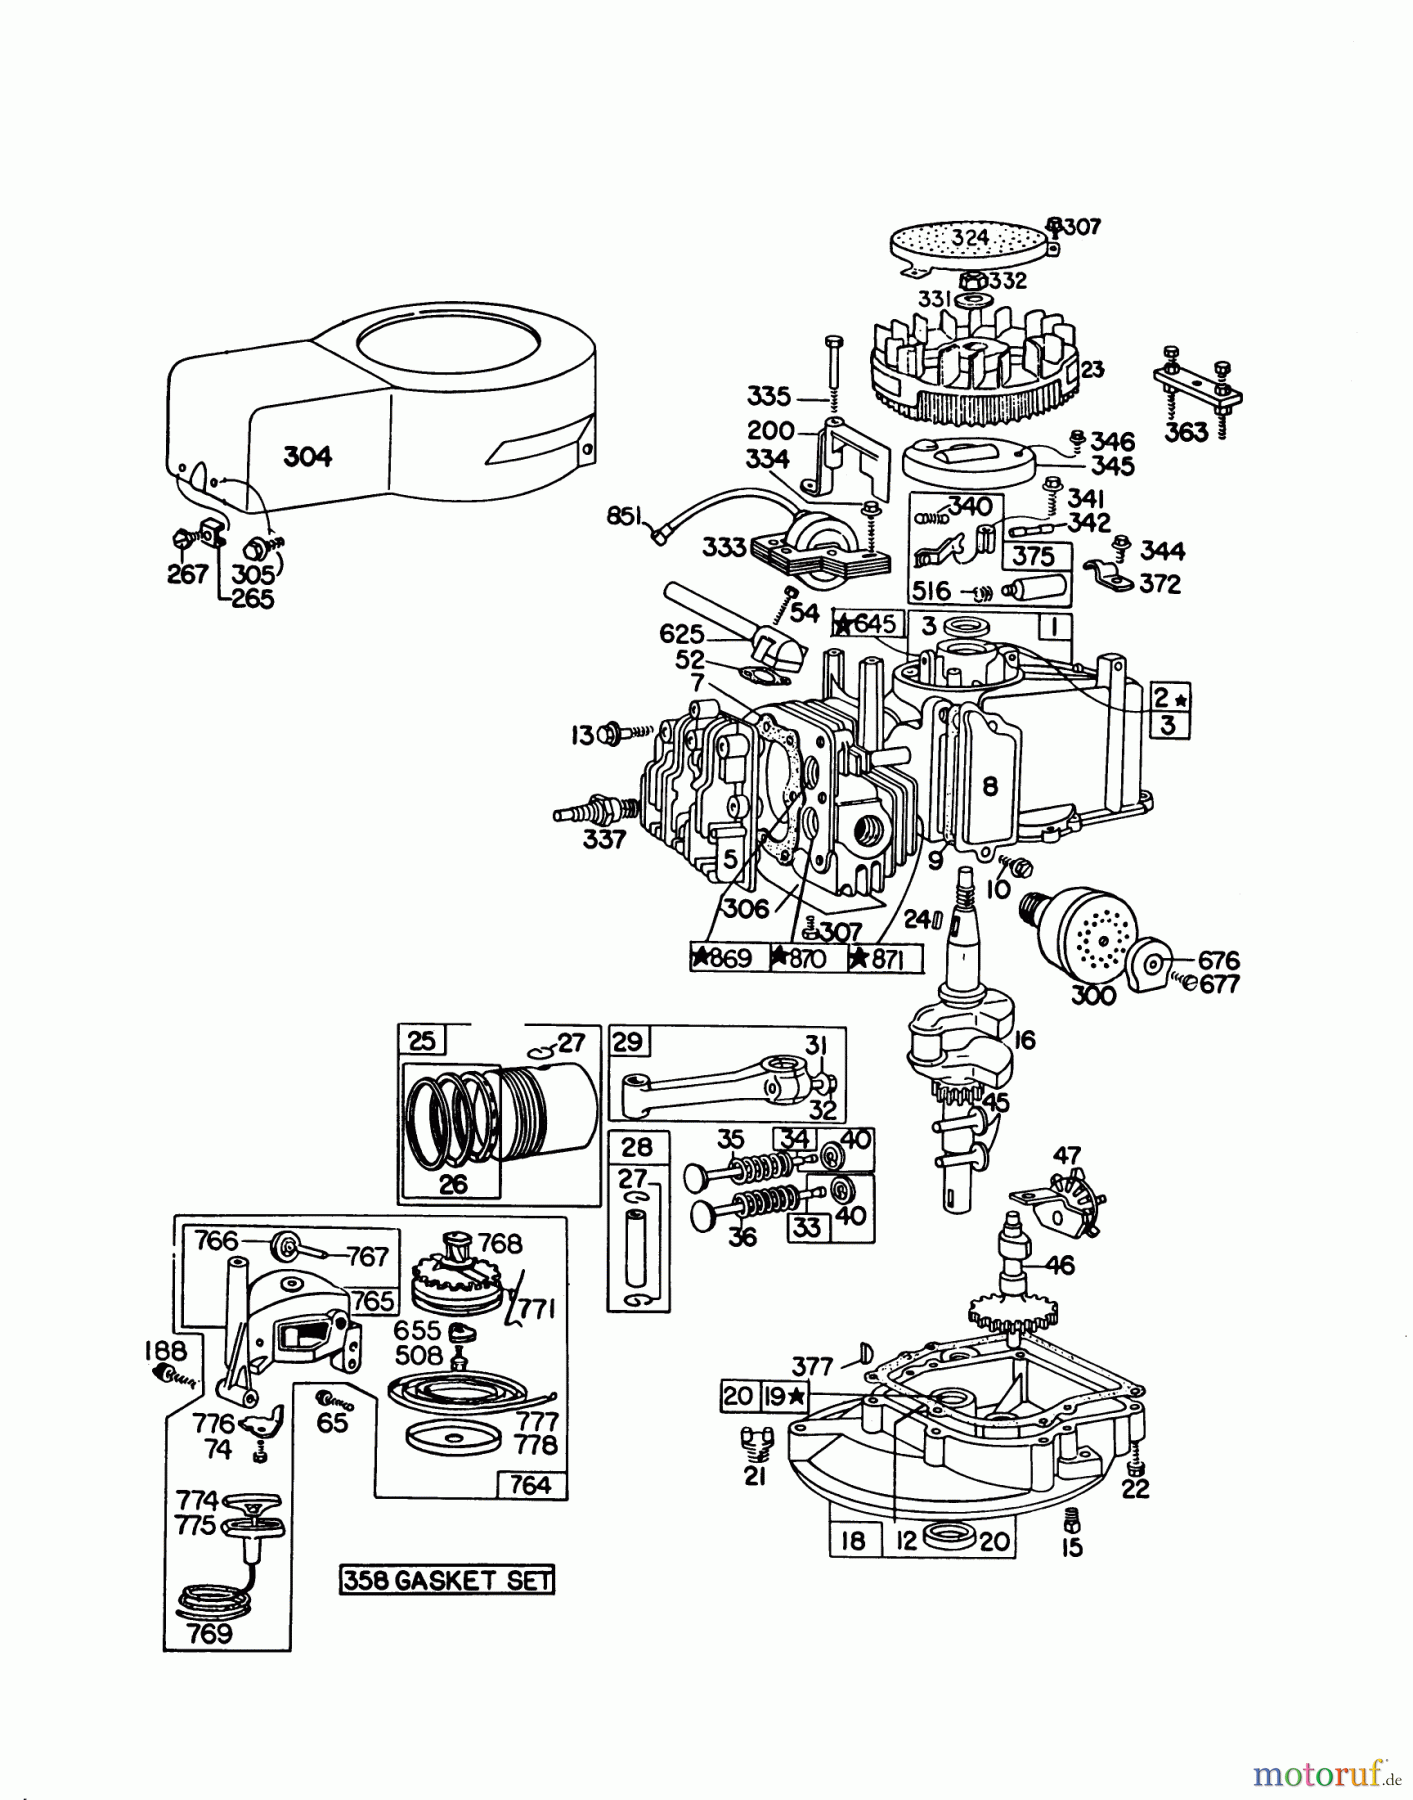  Toro Neu Mowers, Walk-Behind Seite 1 16370 - Toro Whirlwind II Lawnmower, 1979 (9000001-9999999) ENGINE BRIGGS & STRATTON MODEL 92908-1842-04 FOR 21